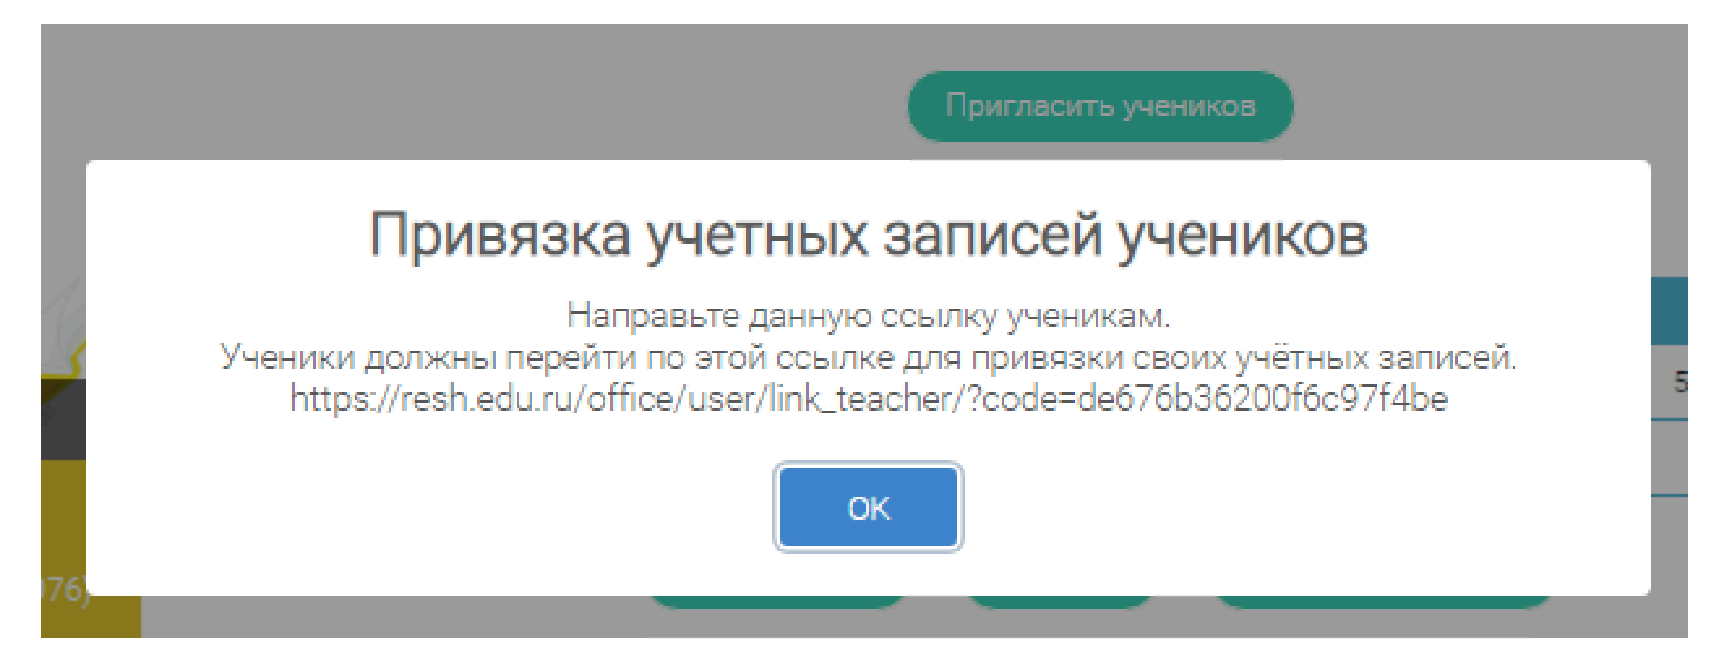 Российская электронная школа онлайн урок